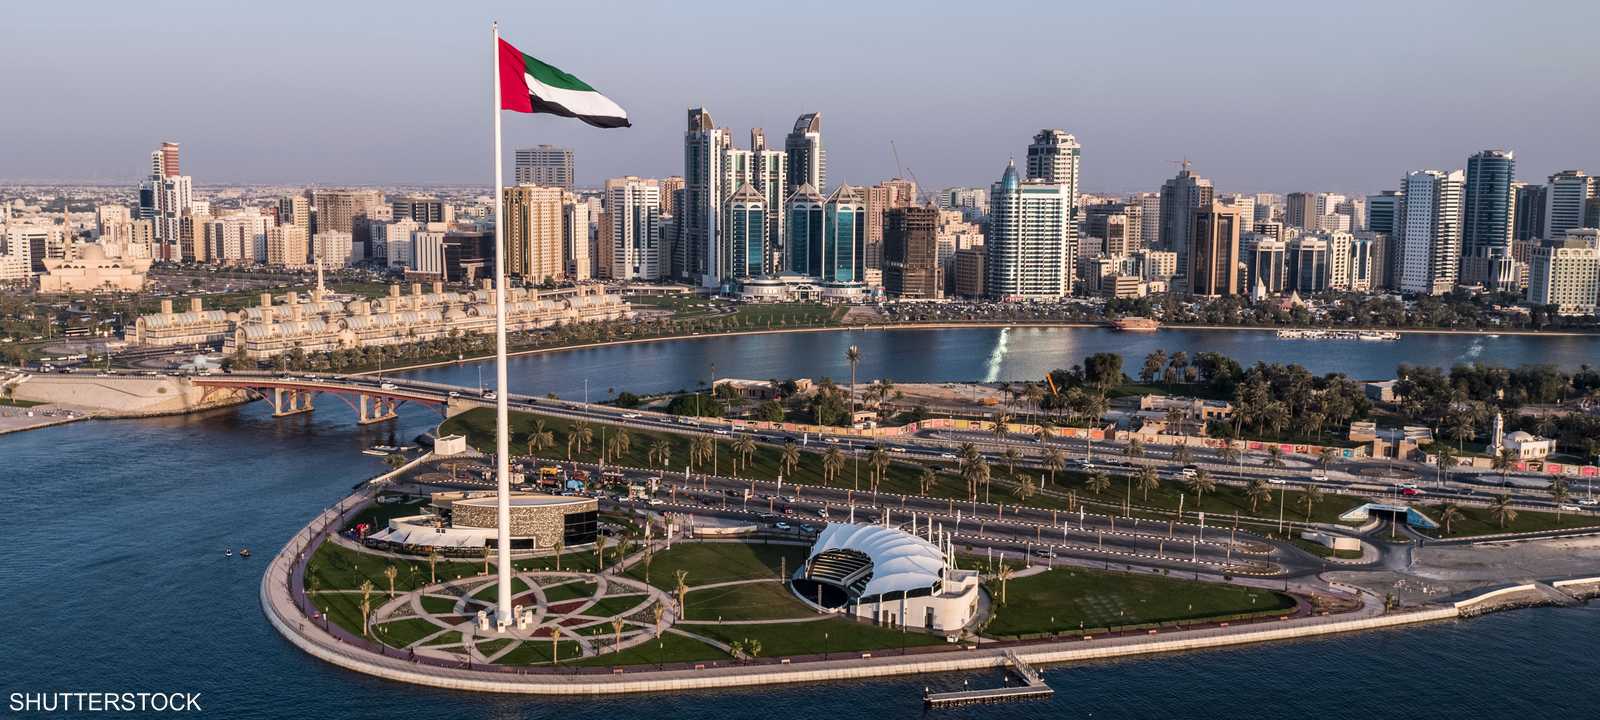 الشارقة - علم الإمارات - اقتصاد